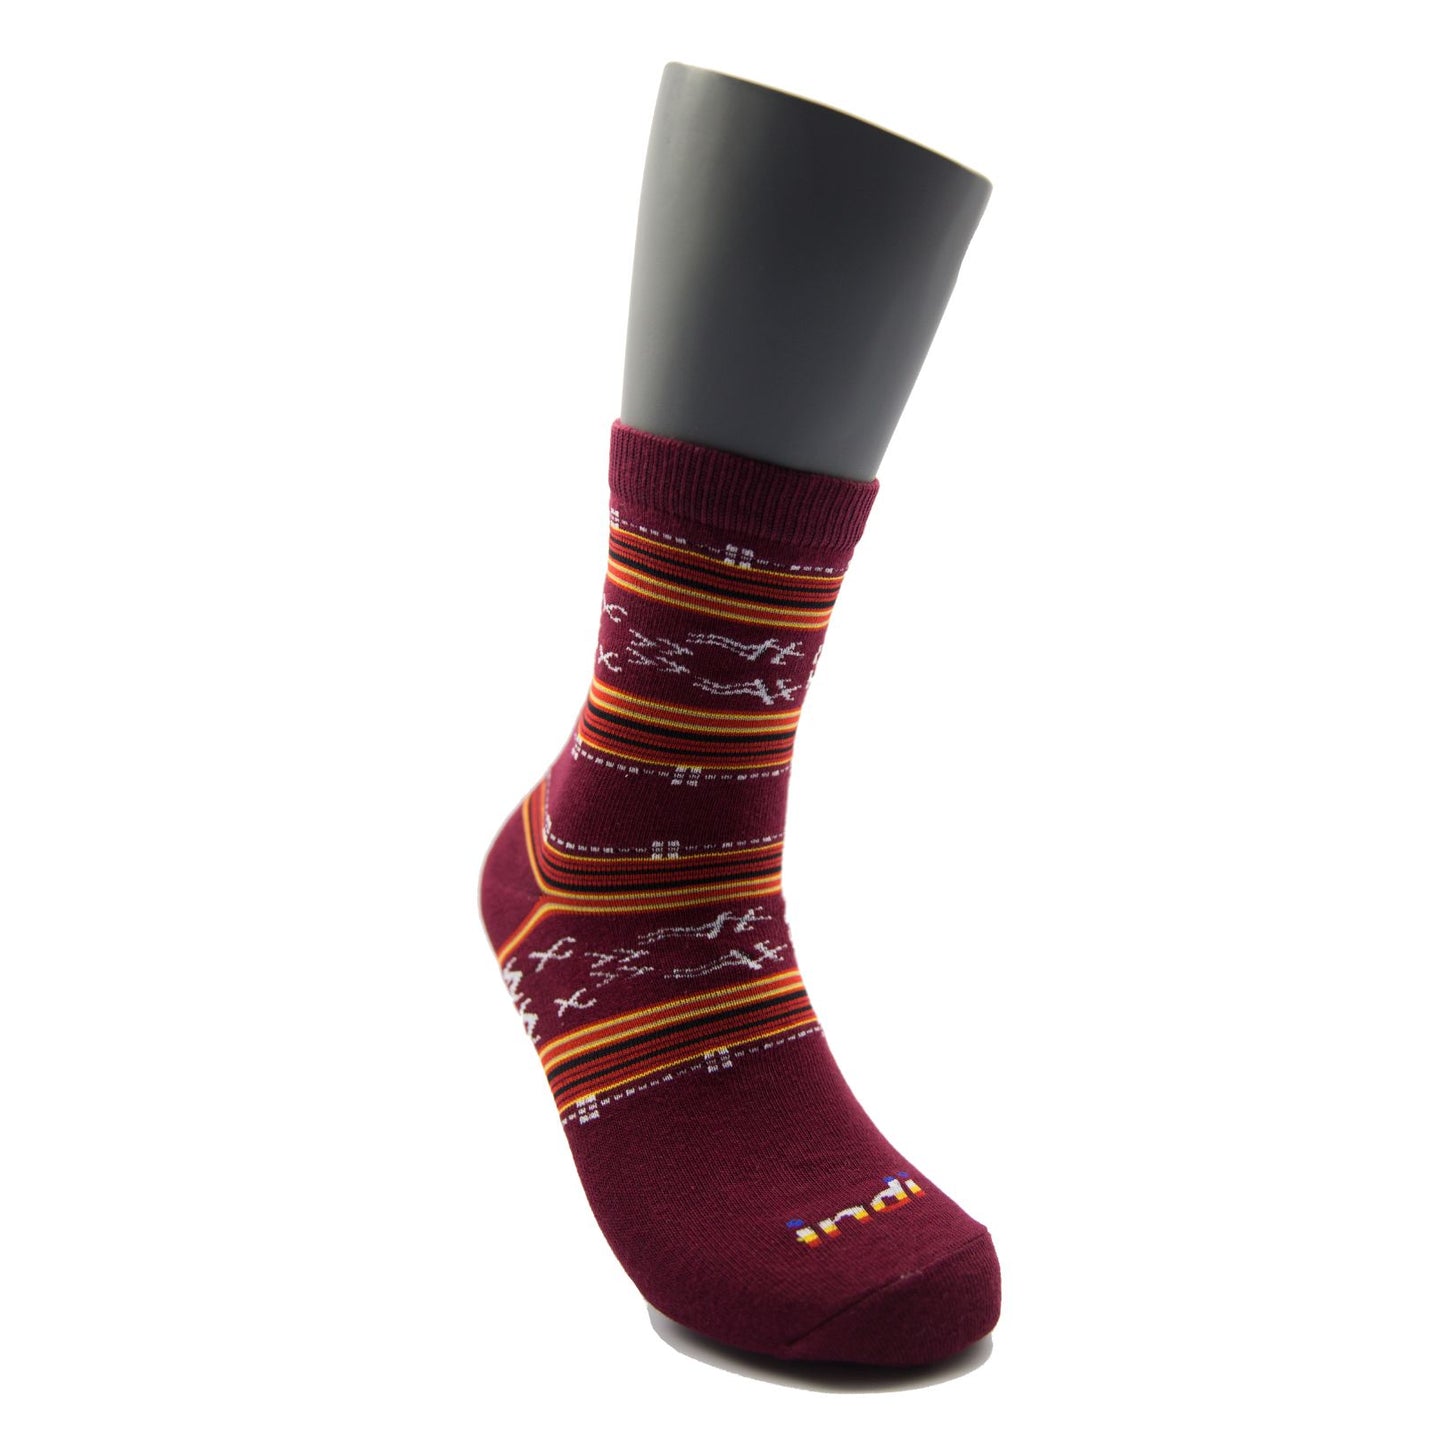 Gulit - INDI Heritage Socks (Adult)